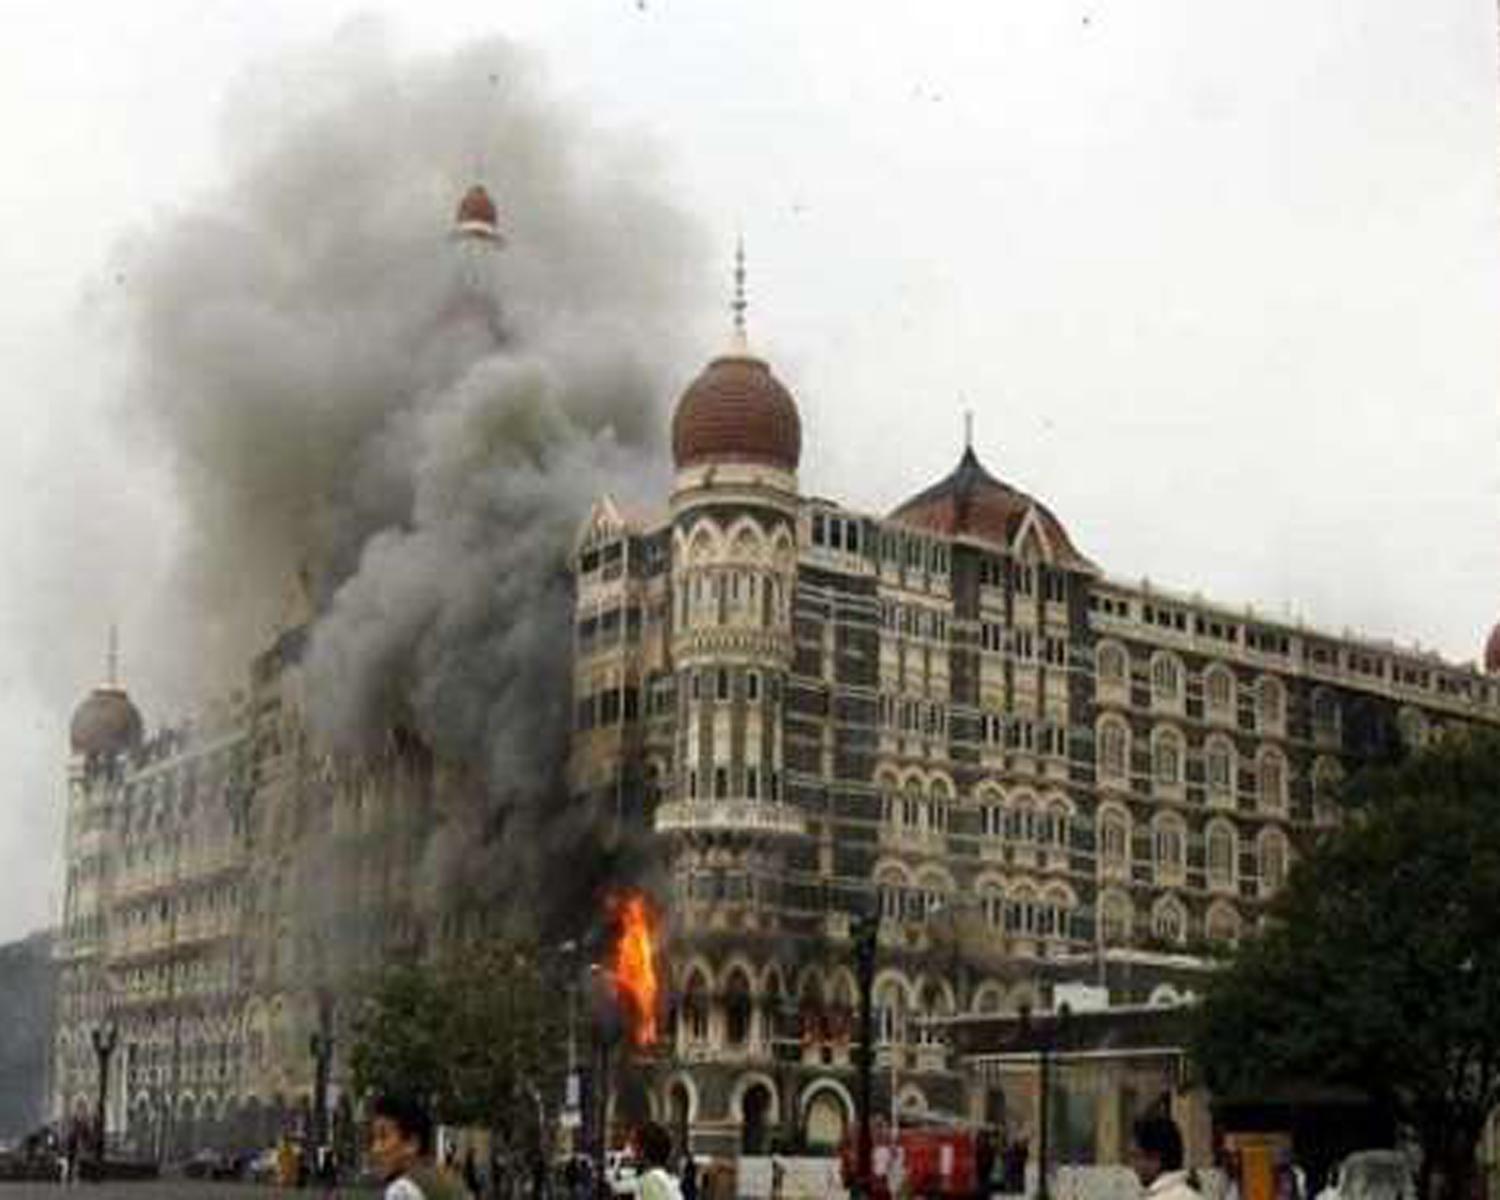 Mumbai Attack न्याय के कटघरे में लाया जाए मुंबई हमले के अपराधियों को:विदेश मंत्री